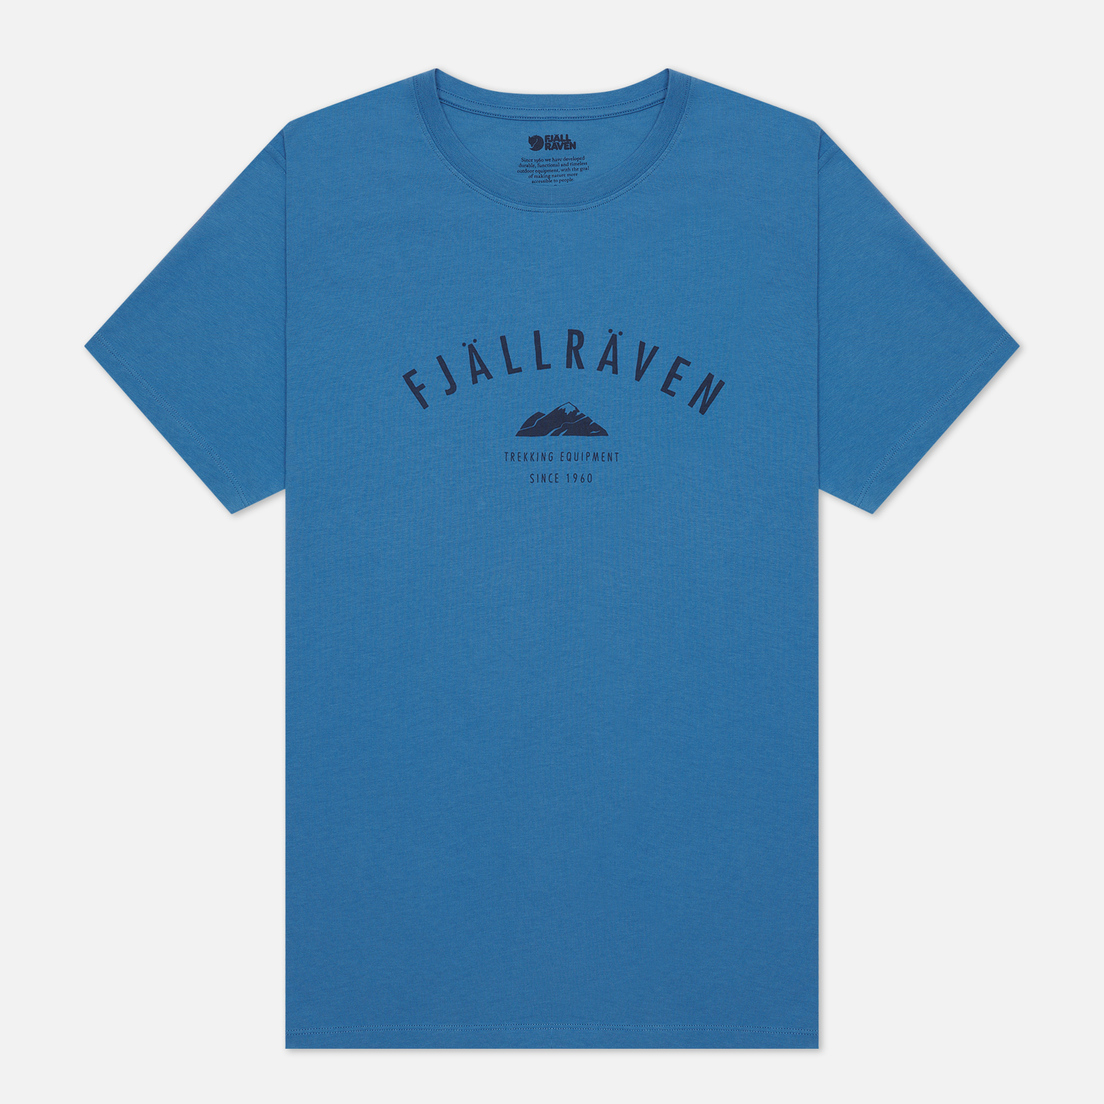 Fjallraven Мужская футболка Trekking Equipment